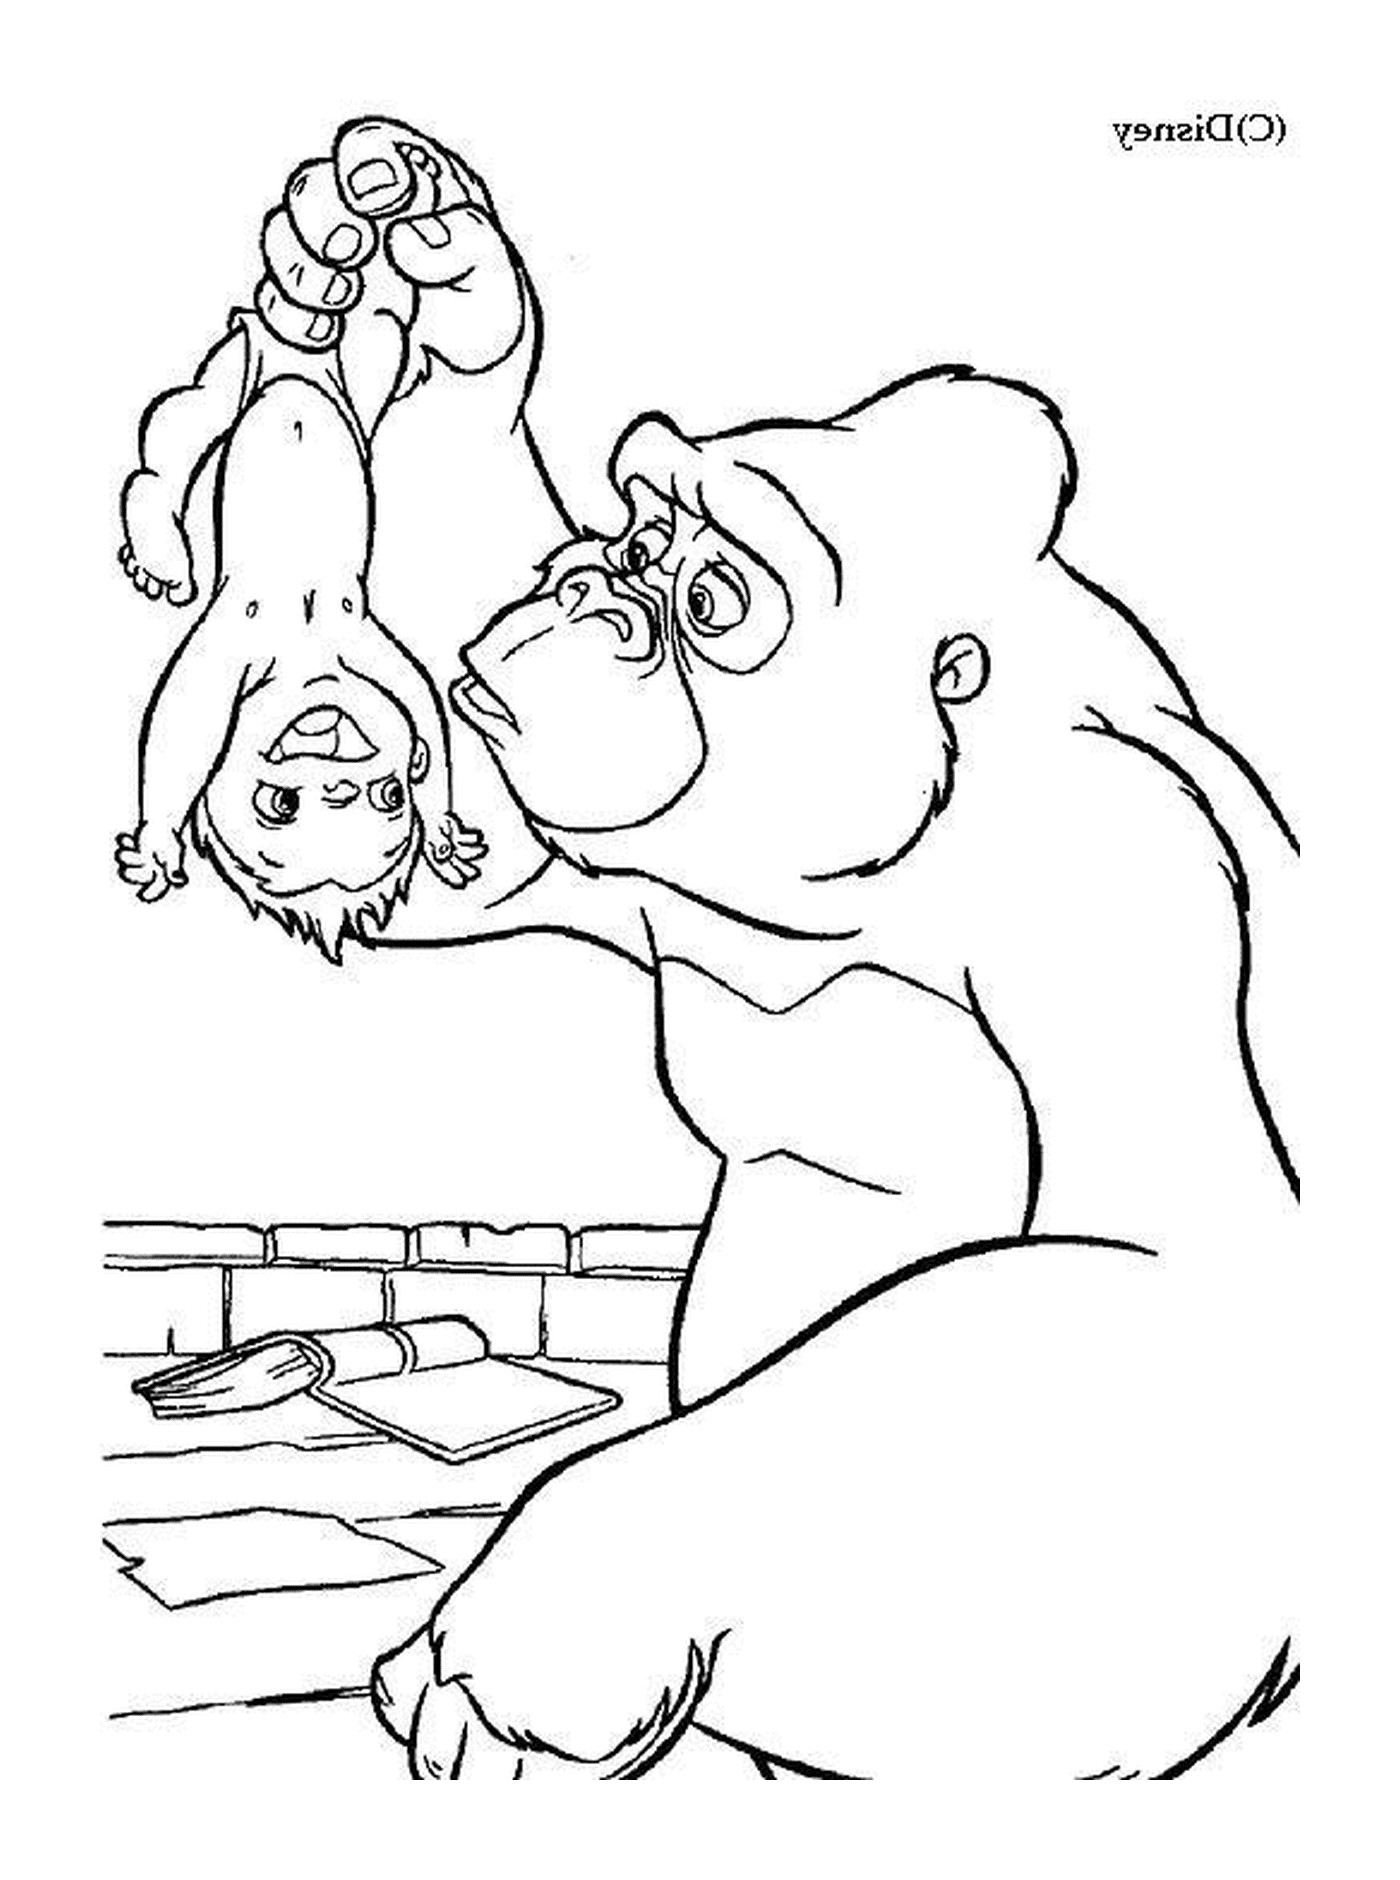  Gorilla e il ragazzo giocano insieme 